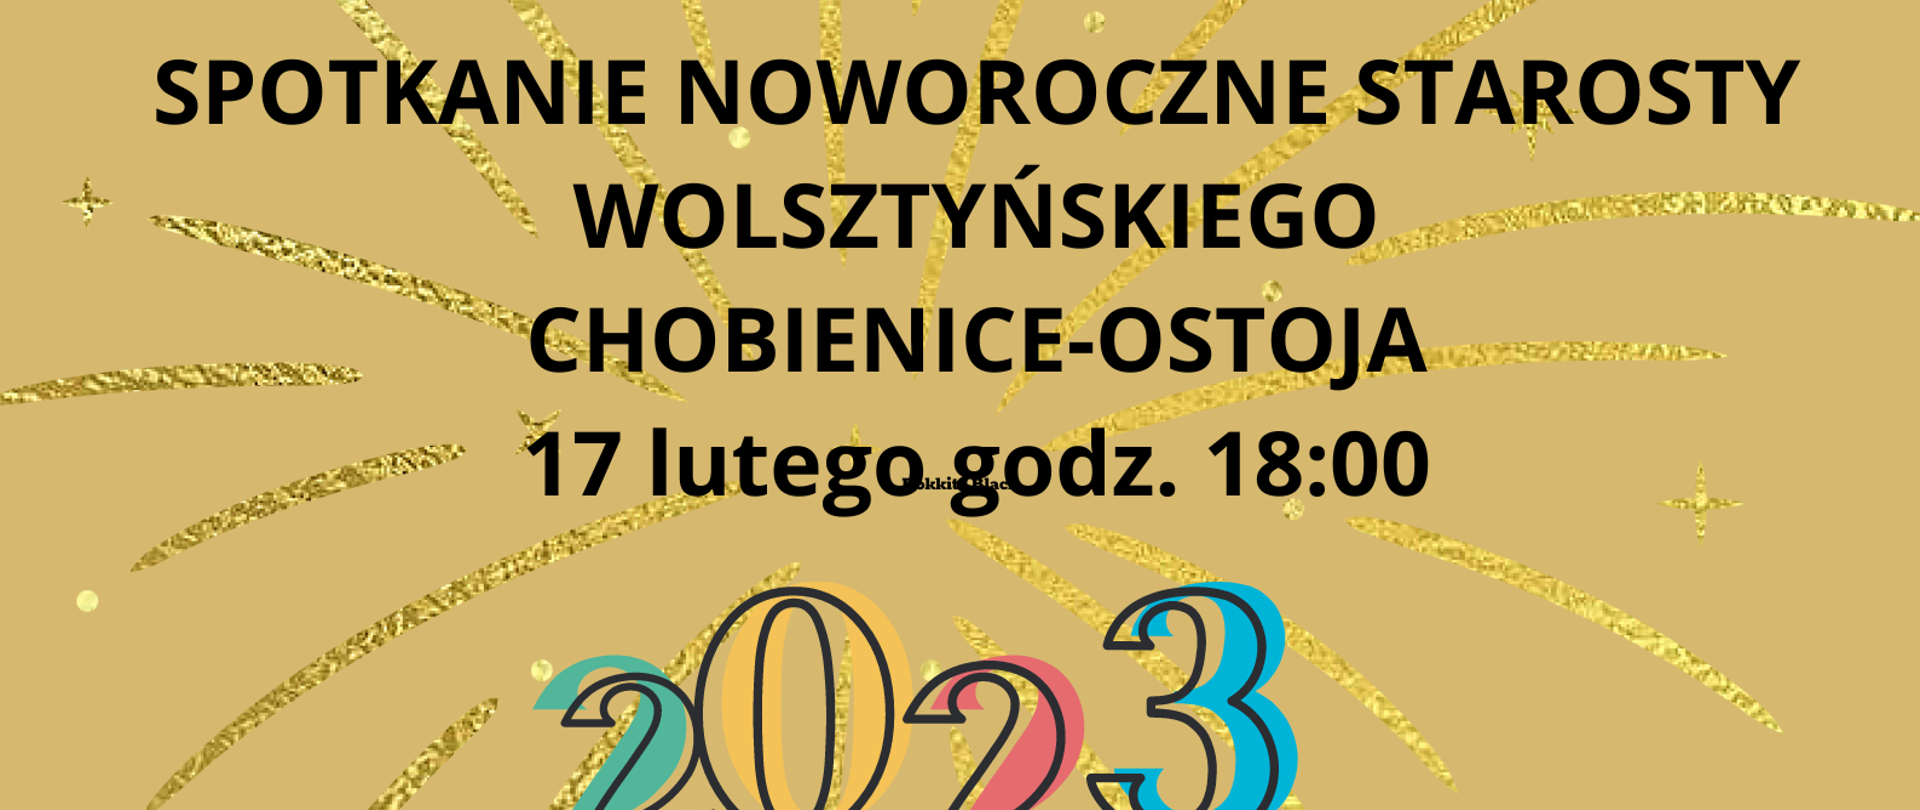 Na cielistym tle instrumenty oraz napis Spotkanie Noworoczne Starosty Wolsztyńskiego, Piątek 17 lutego godzina 18:00.